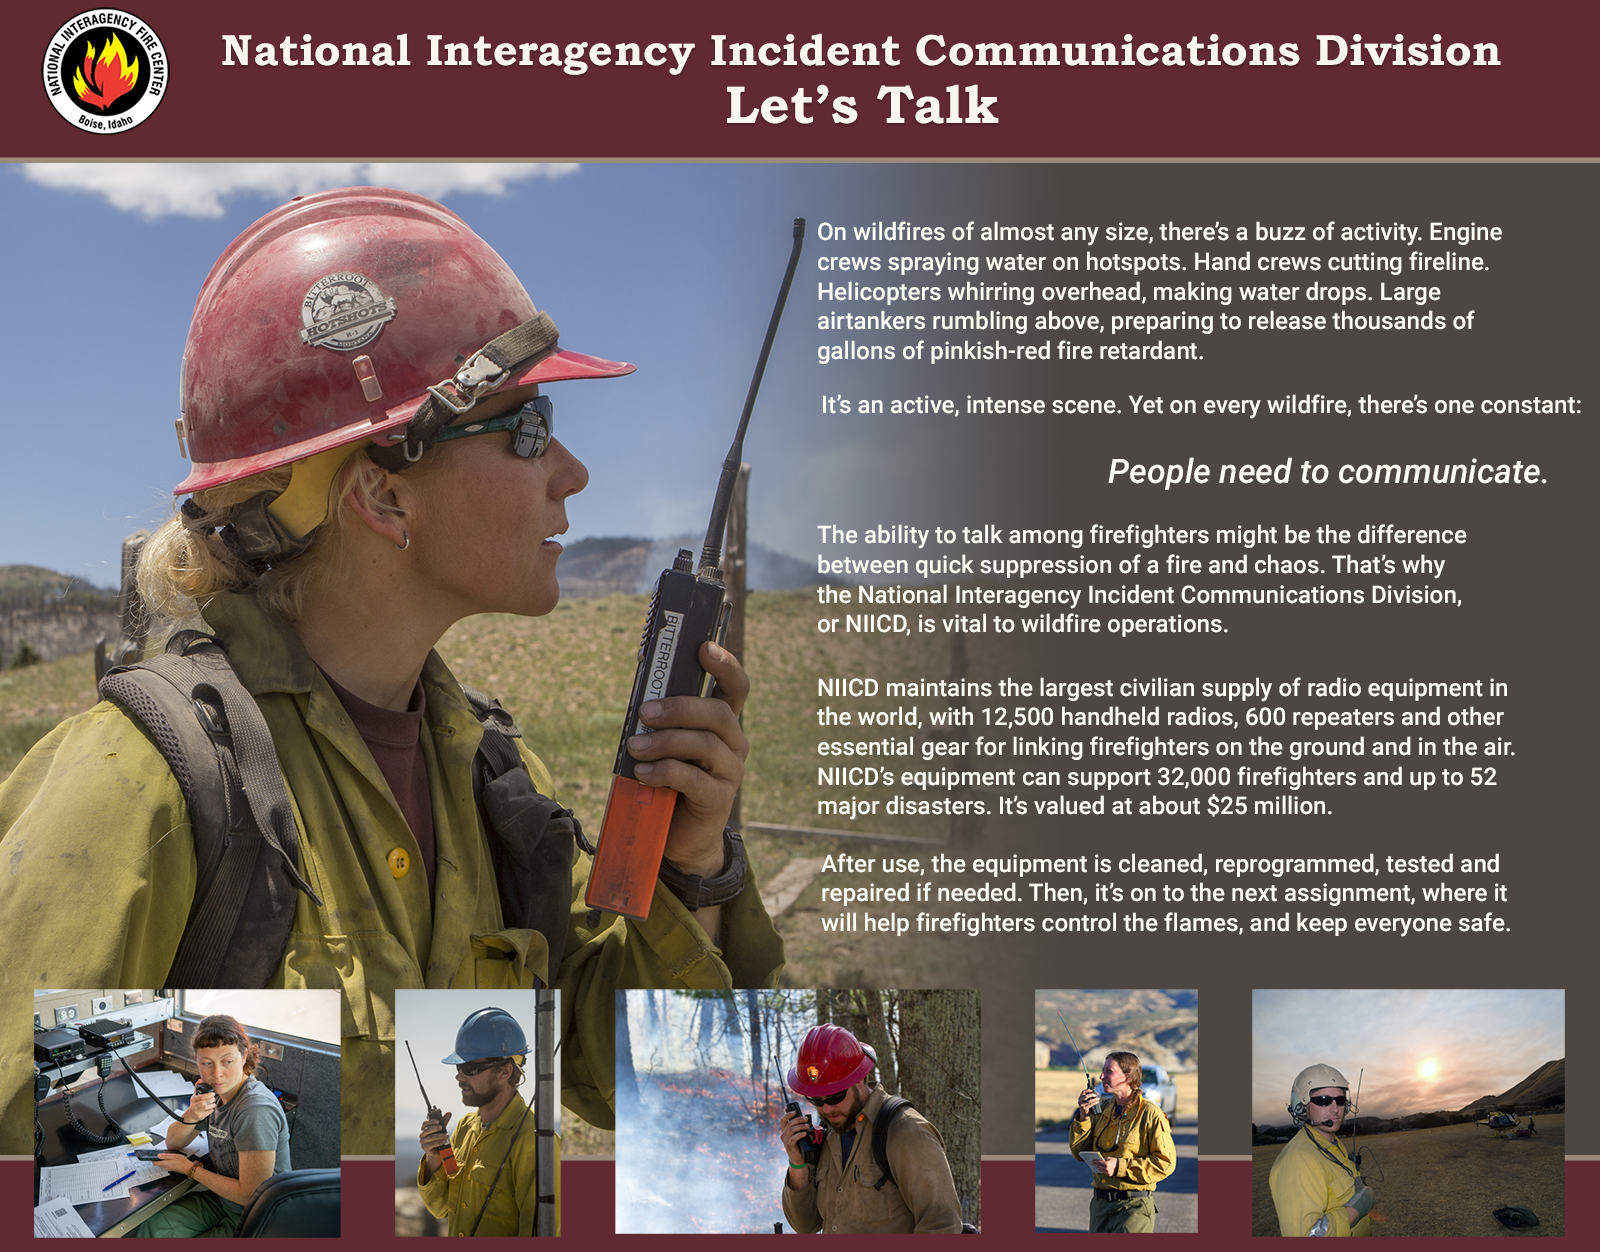 Interpretive Sign titled "National Interagency Incident Communications Division: Let's Talk"